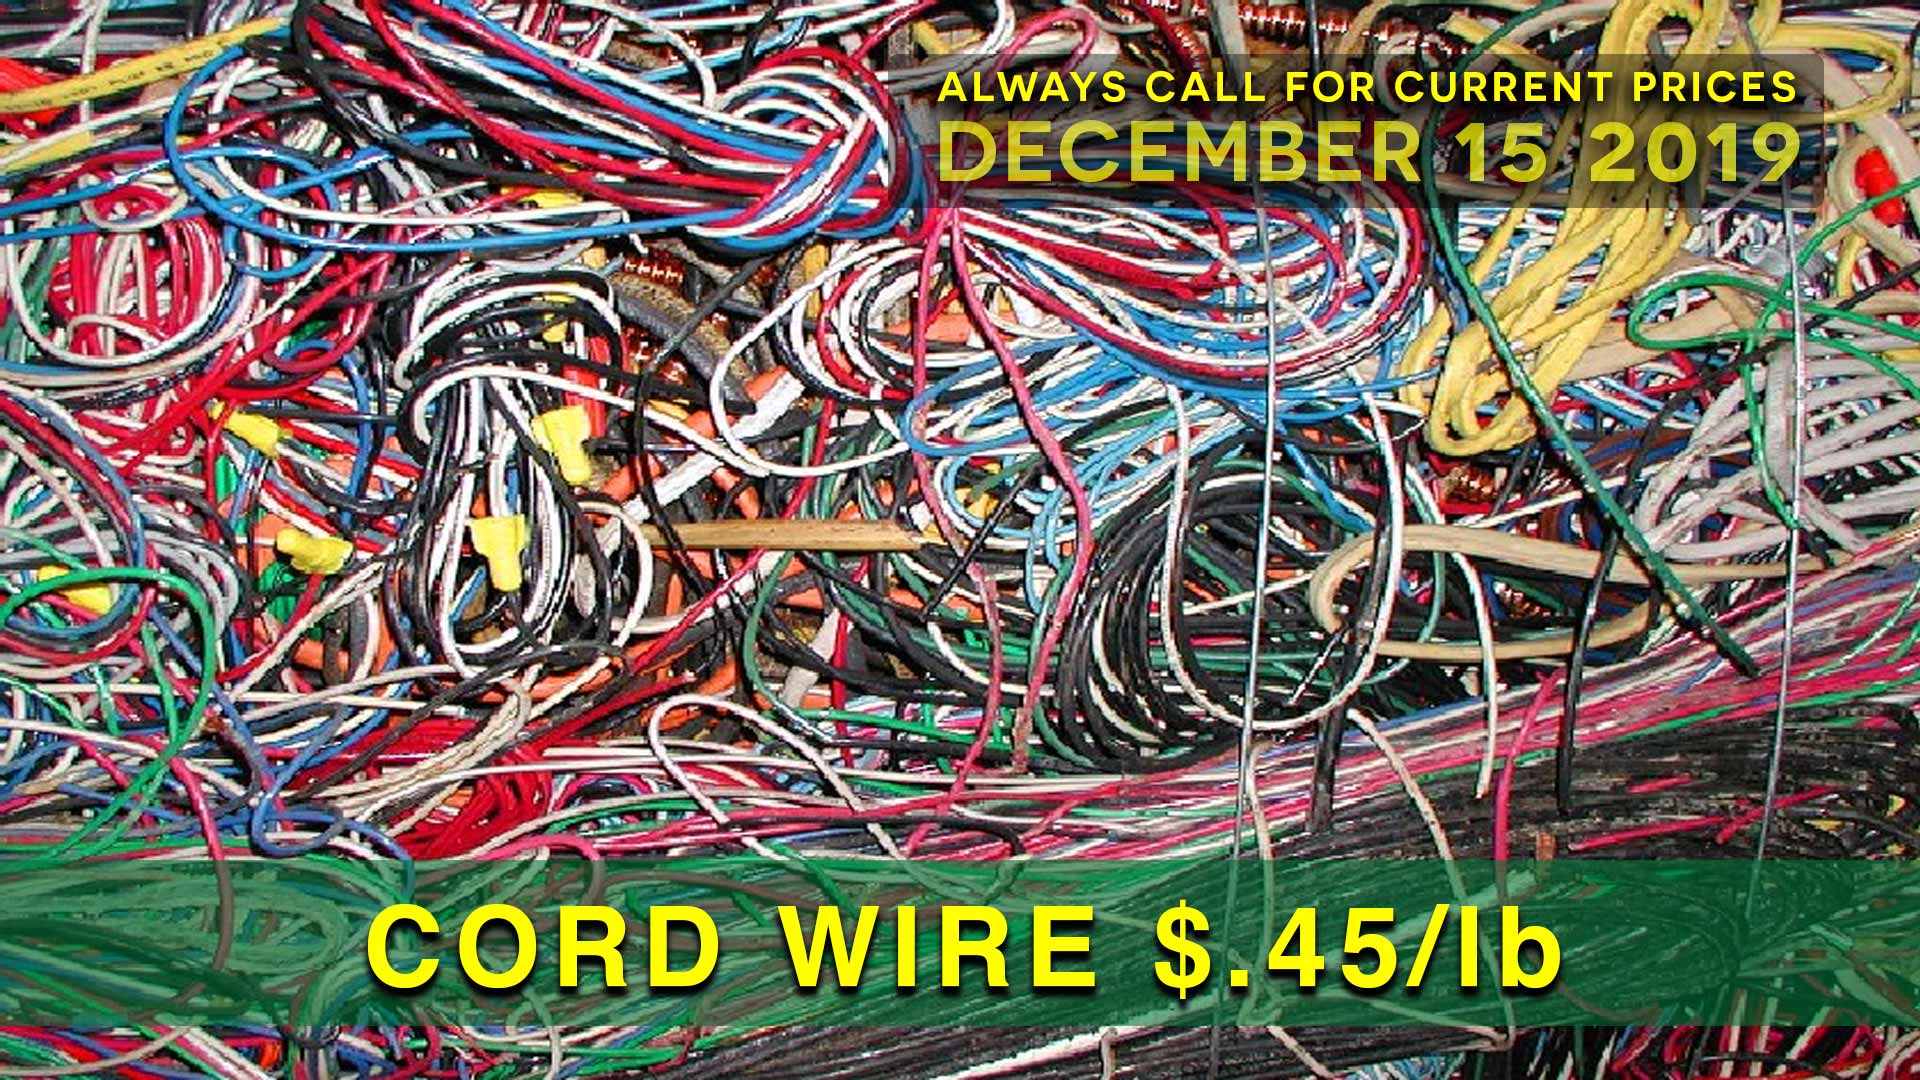 Cord wire $.45 lb.